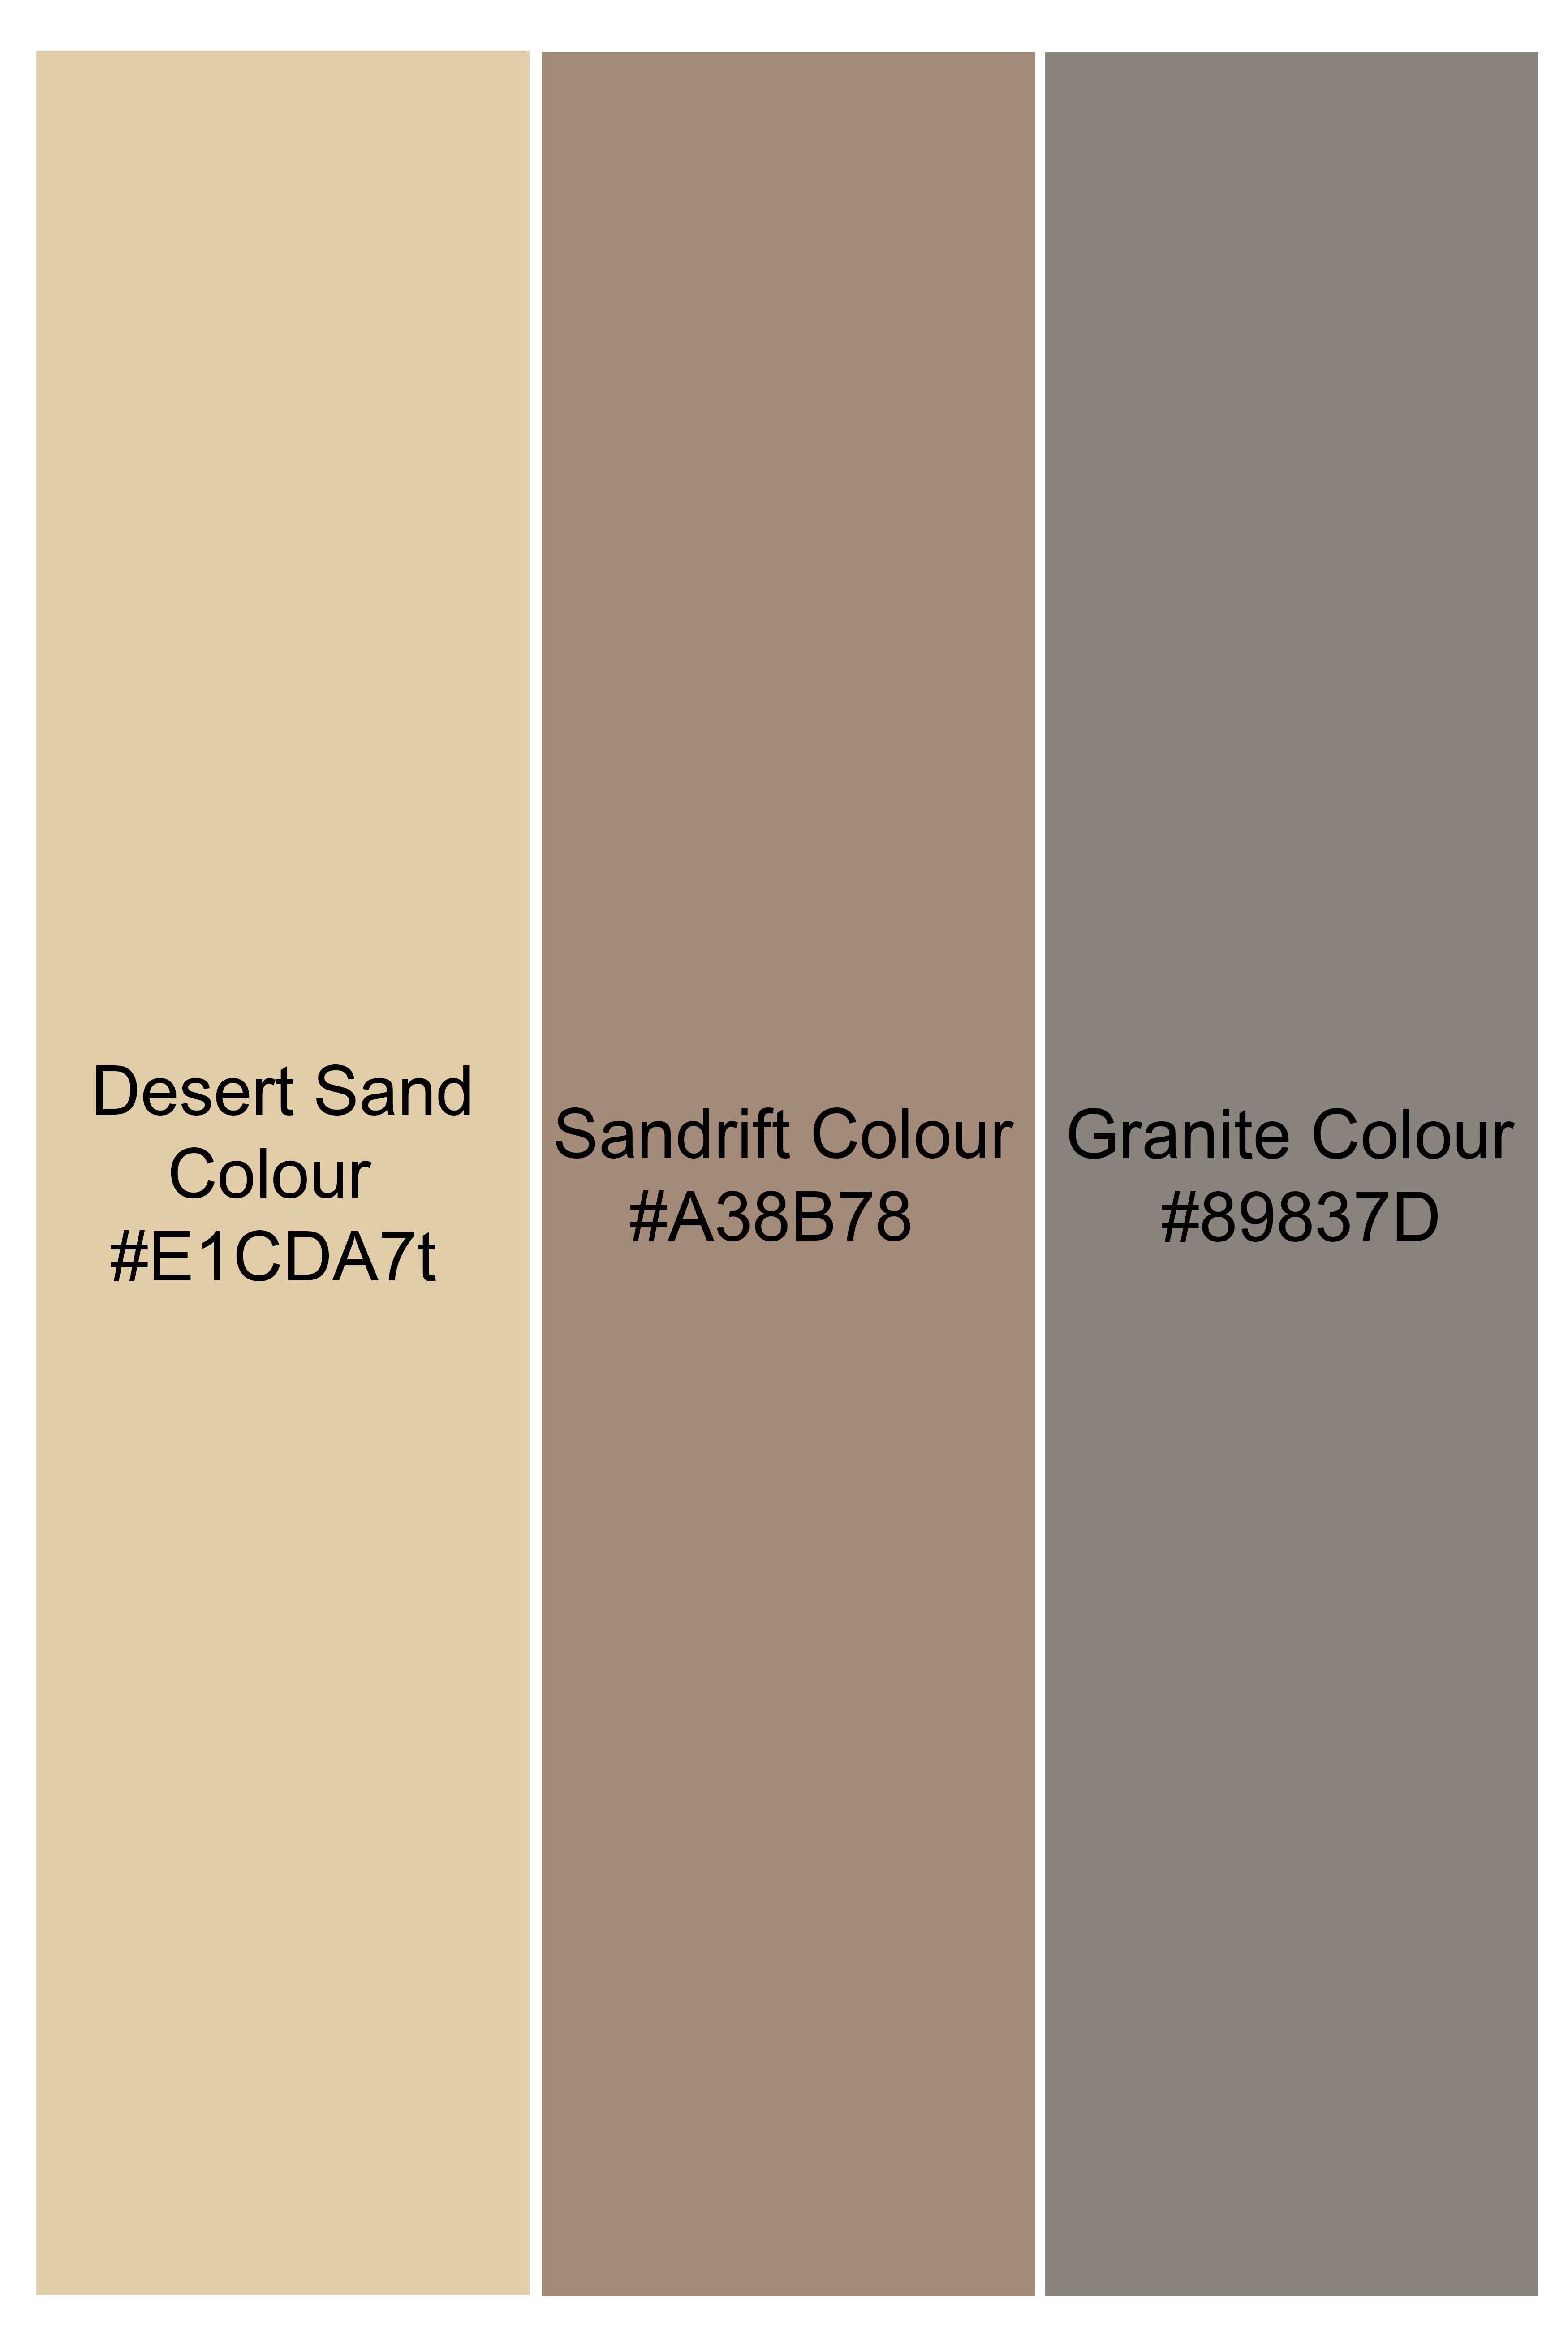 Desert Sand Beige and Sandrift Brown Premium Cotton Designer Suit ST2860-SB-D110-36,ST2860-SB-D110-38,ST2860-SB-D110-40,ST2860-SB-D110-42,ST2860-SB-D110-44,ST2860-SB-D110-46,ST2860-SB-D110-48,ST2860-SB-D110-50,ST2860-SB-D110-52,ST2860-SB-D110-54,ST2860-SB-D110-56,ST2860-SB-D110-58,ST2860-SB-D110-60